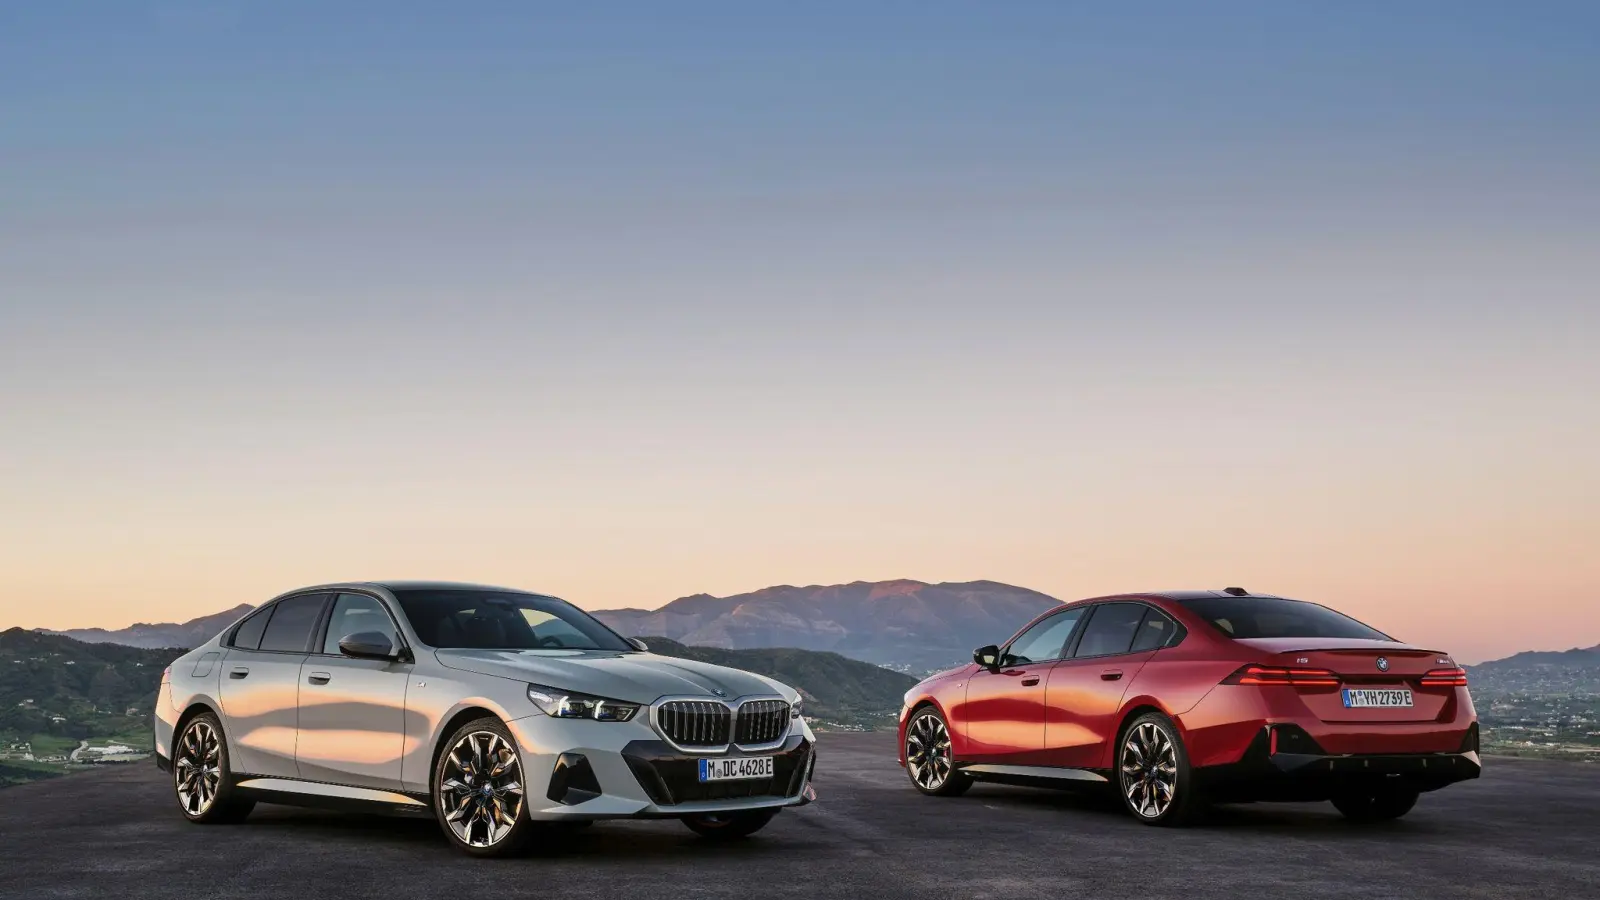 Ab Oktober im Handel: Der neue BMW 5er konkurriert als klassische Limousine der oberen Mittelklasse mit Autos wie Audi A6 oder Mercedes E-Klasse. (Foto: Daniel Kraus/BMW AG/dpa-tmn)